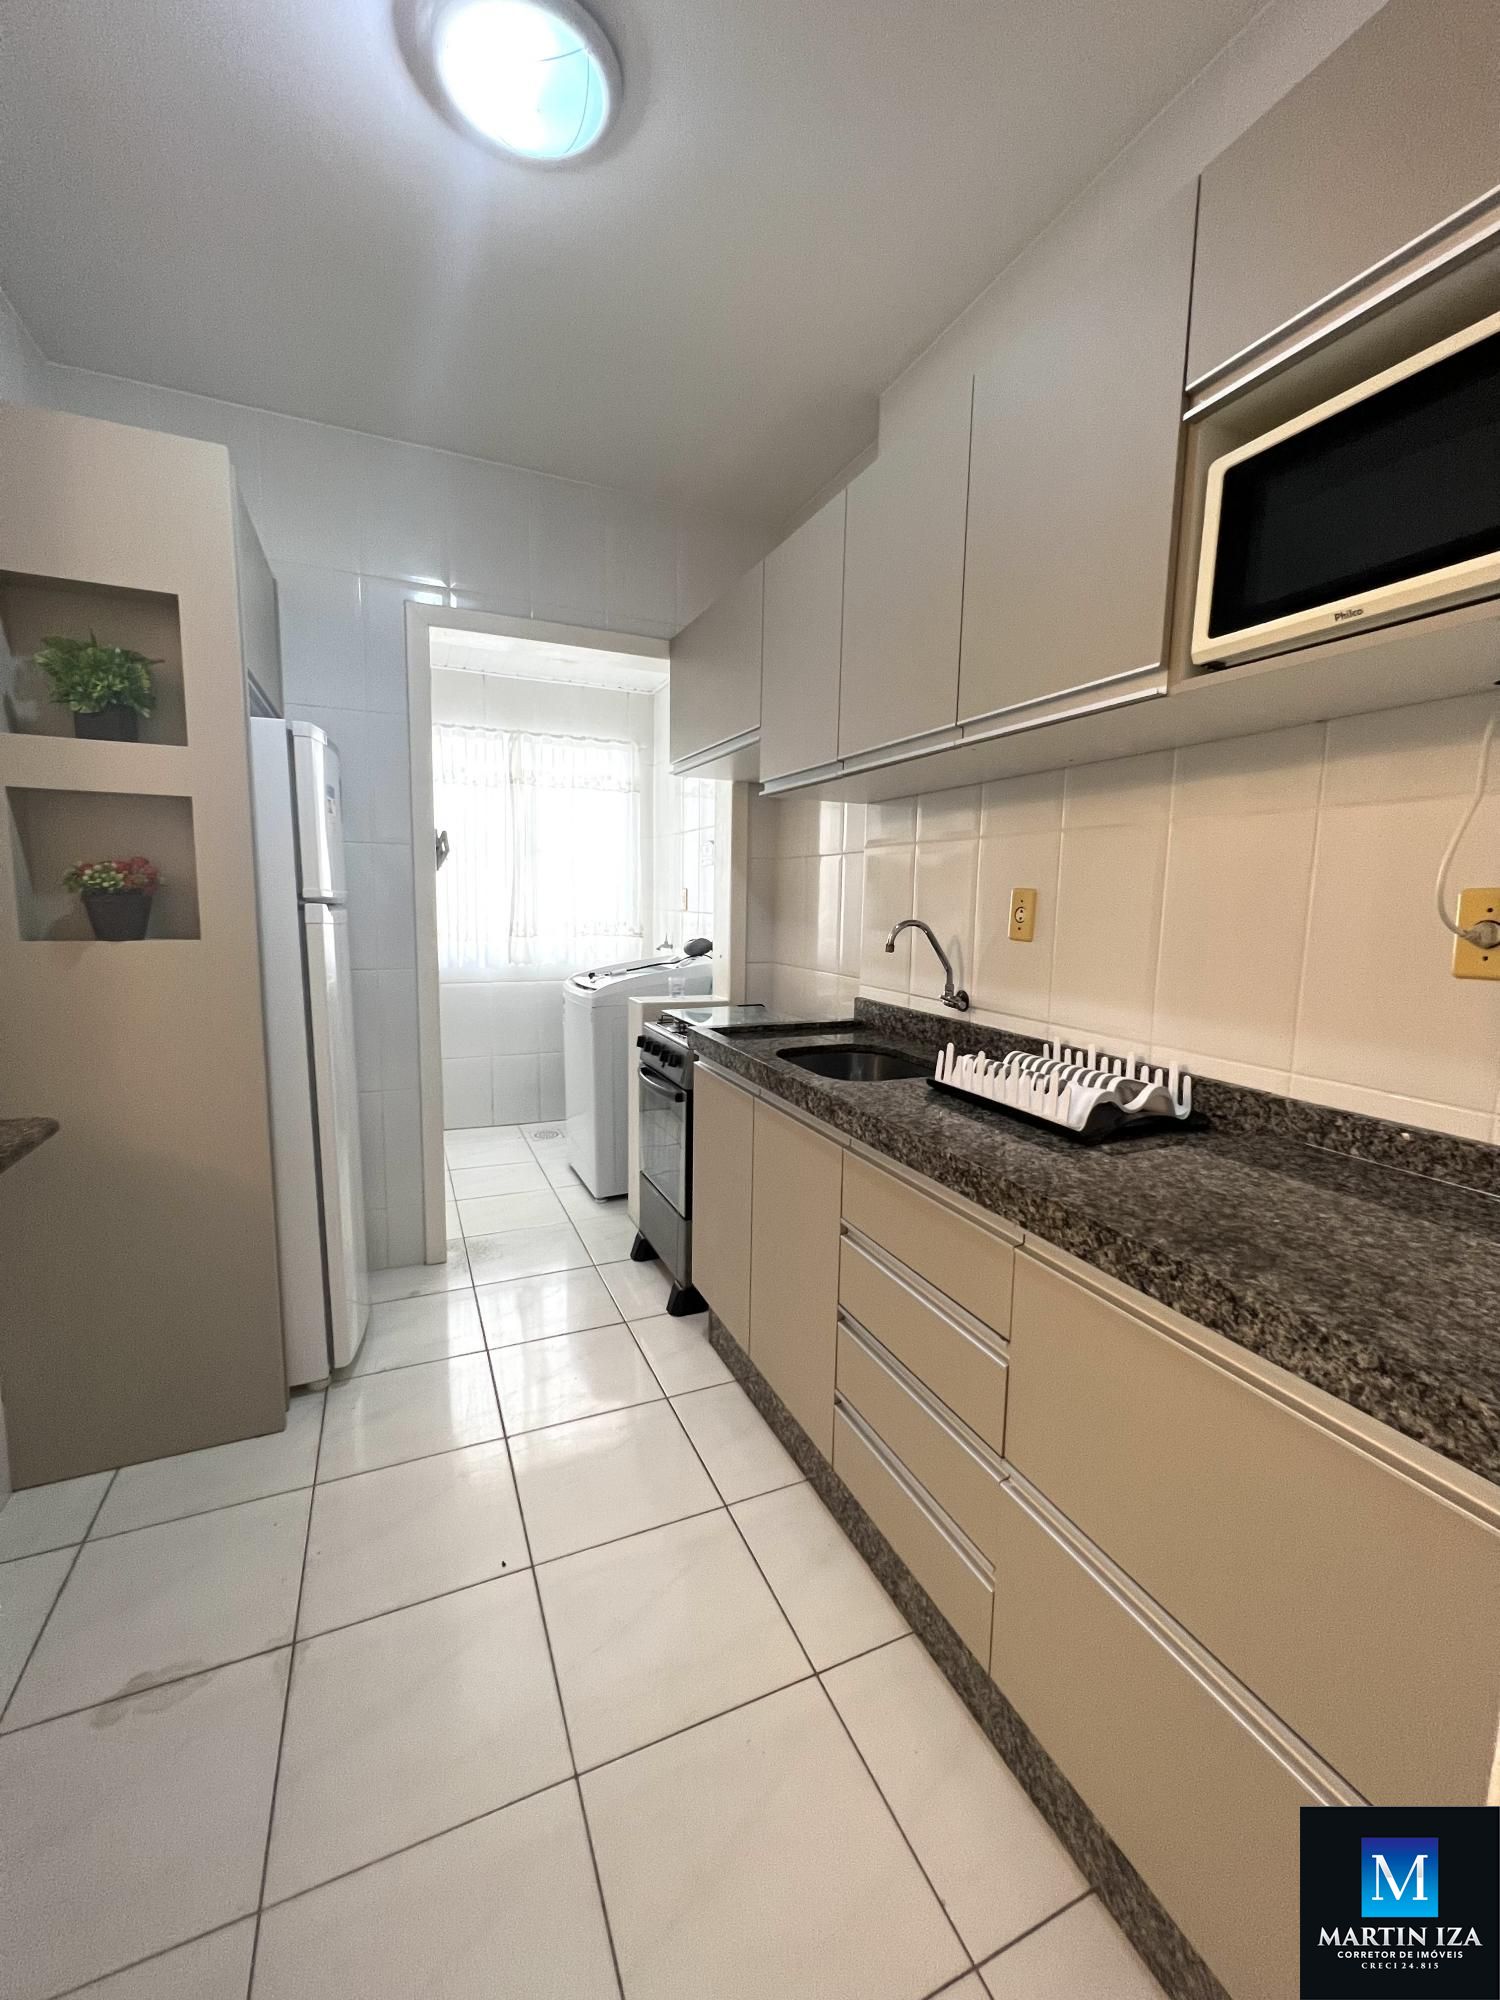 Apartamento com 3 Dormitórios para alugar, 110 m² por R$ 400,00